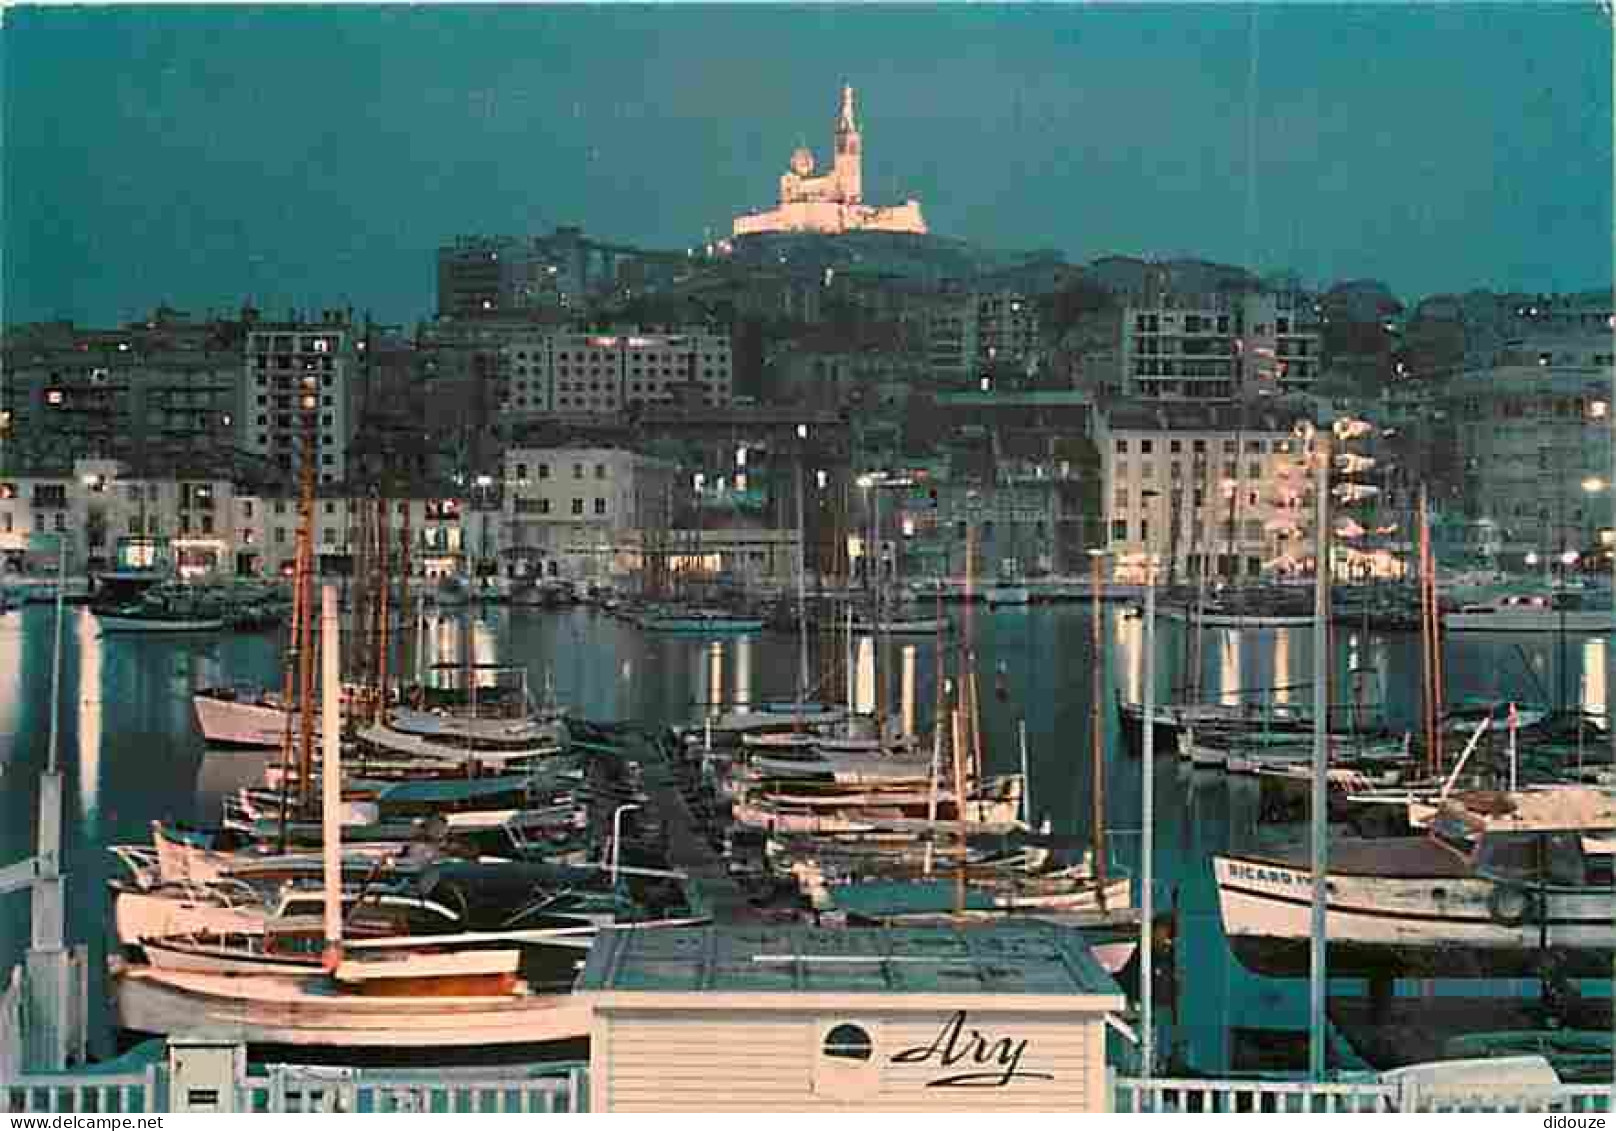 13 - Marseille - Le Vieux Port - Vue De Nuit - CPM - Voir Scans Recto-Verso - Vieux Port, Saint Victor, Le Panier